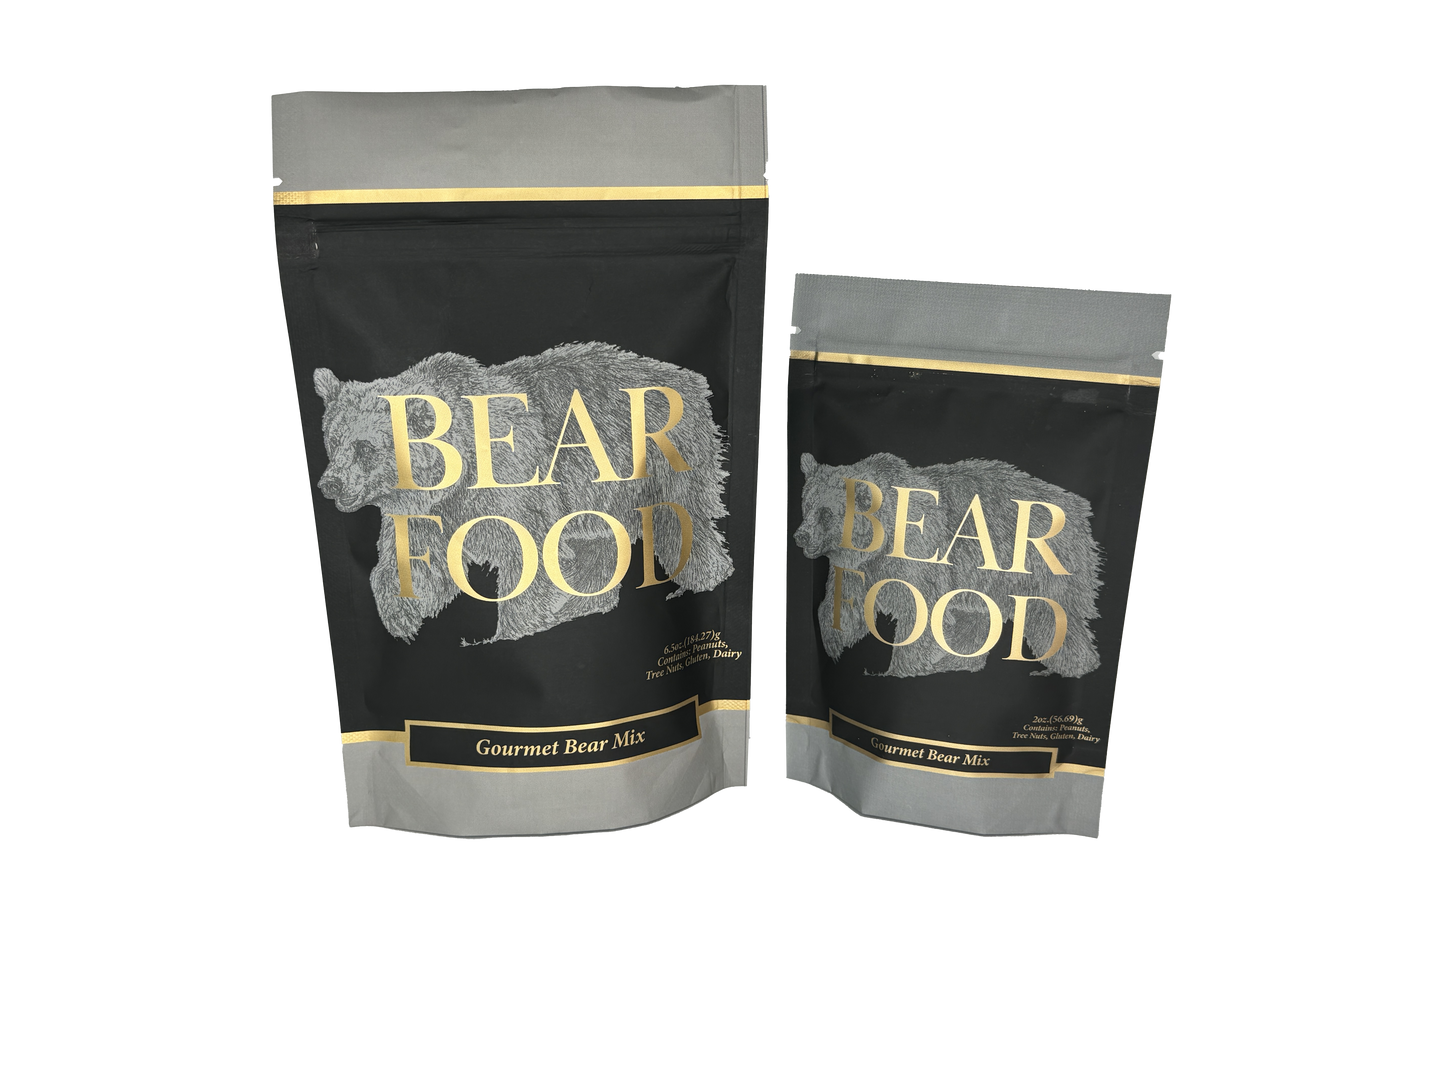 Pouches Wholesale Gourmet Bear Mix